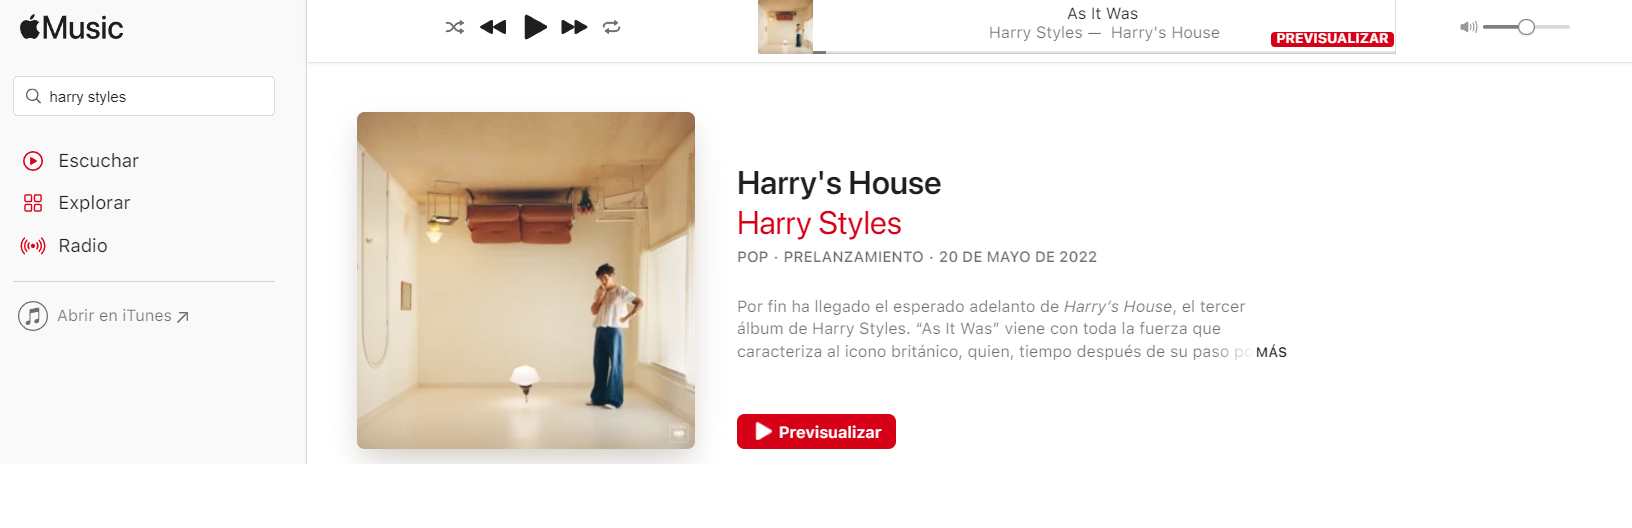 Apple Music Live, el nuevo servicio streaming, se estrena con un show de Harry Styles